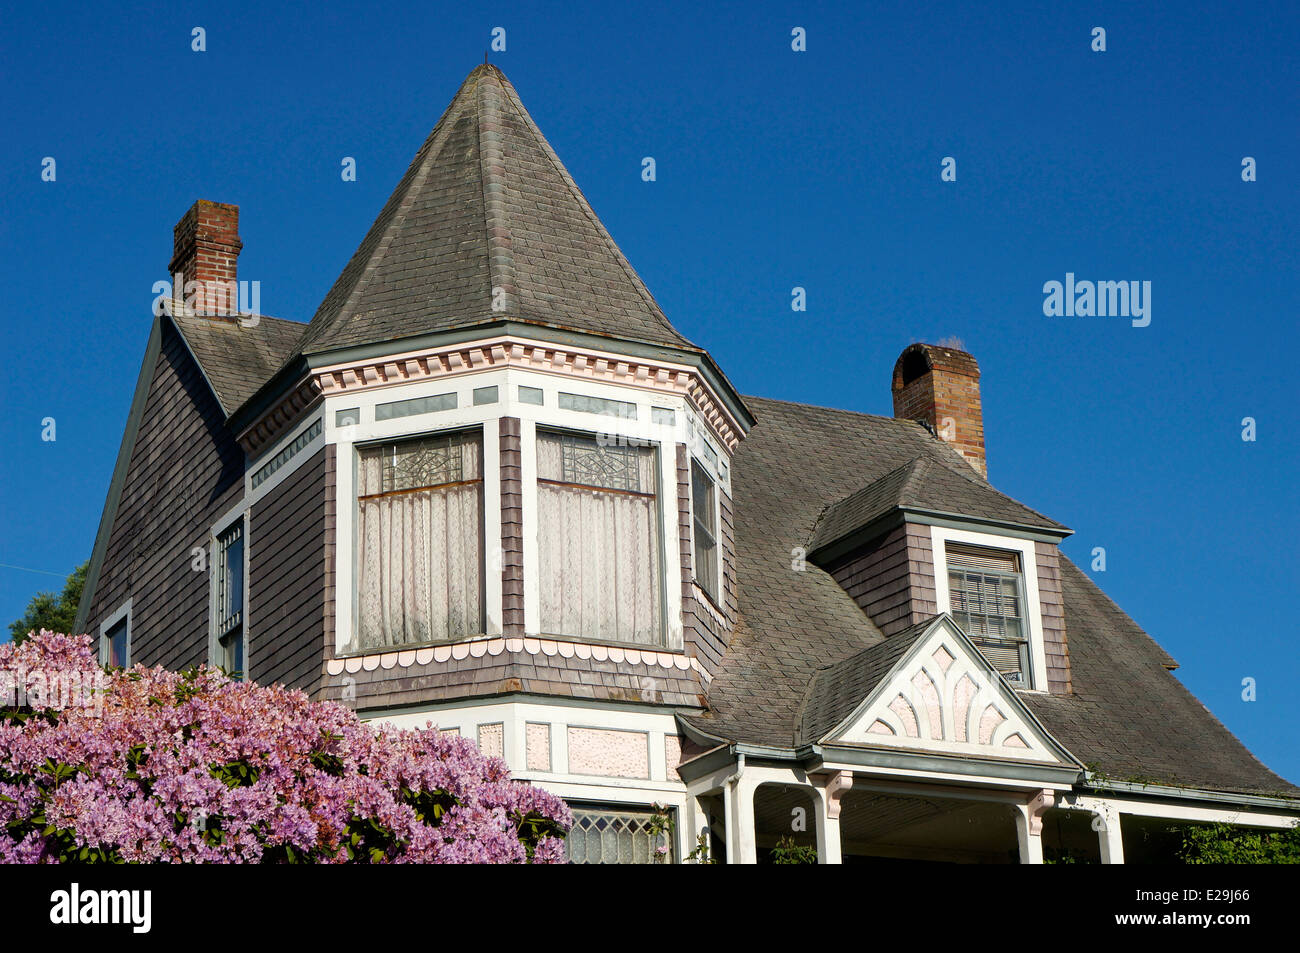 Style Queen Anne maison victorienne dans le quartier historique de Fairhaven de Bellingham, Washington State, USA Banque D'Images